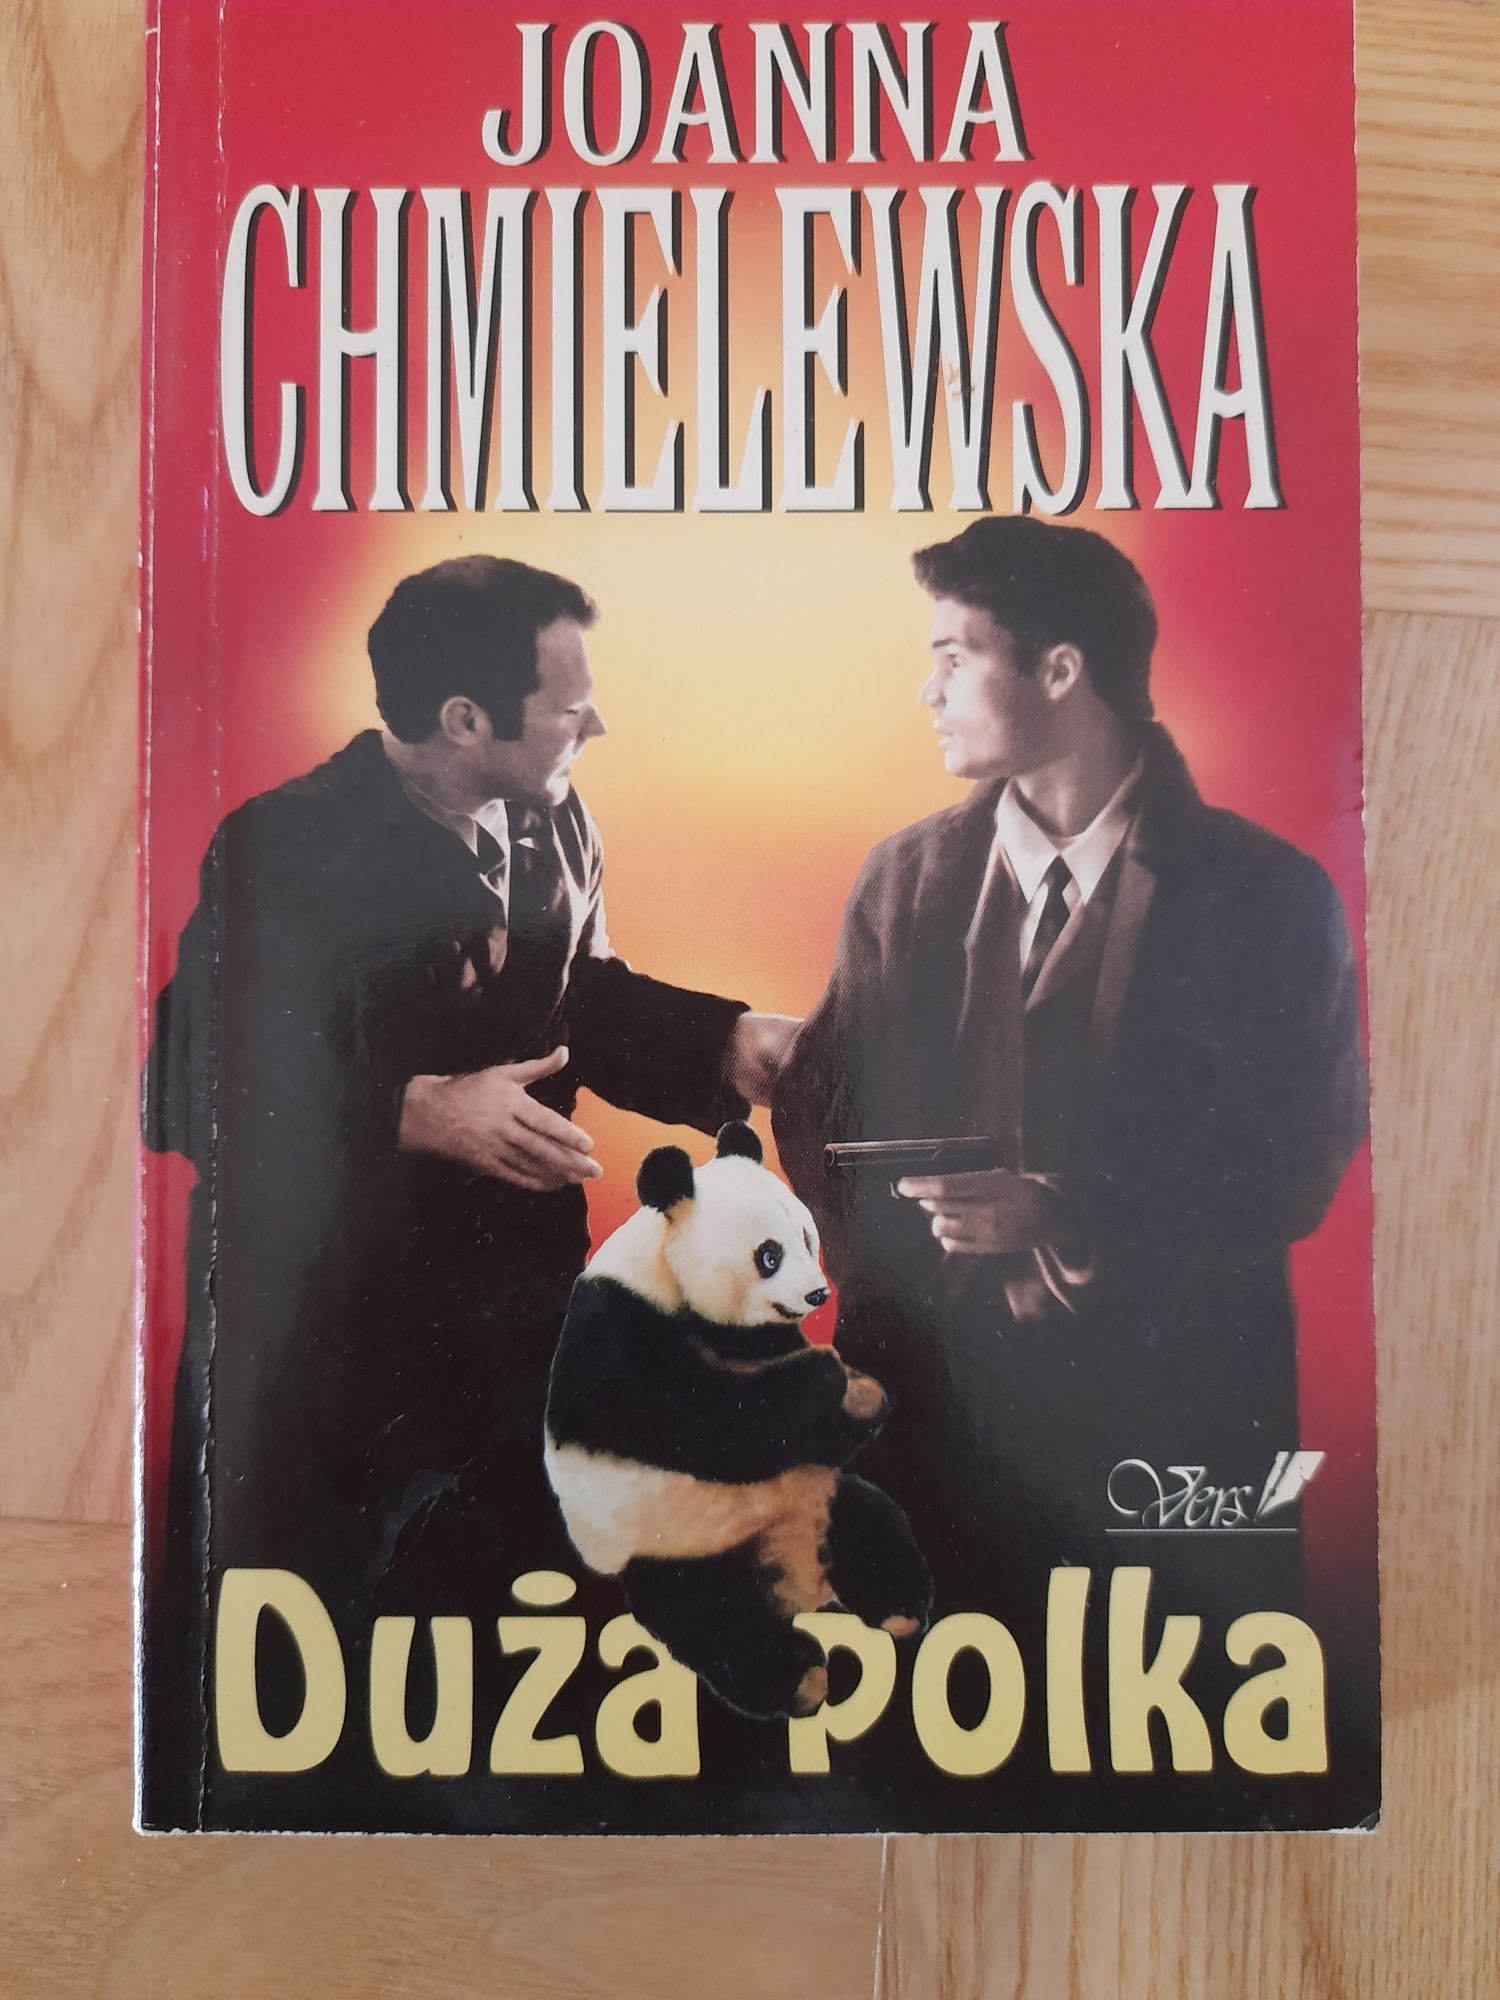 Książka Joanny Chmielewskiej "Duża polka"